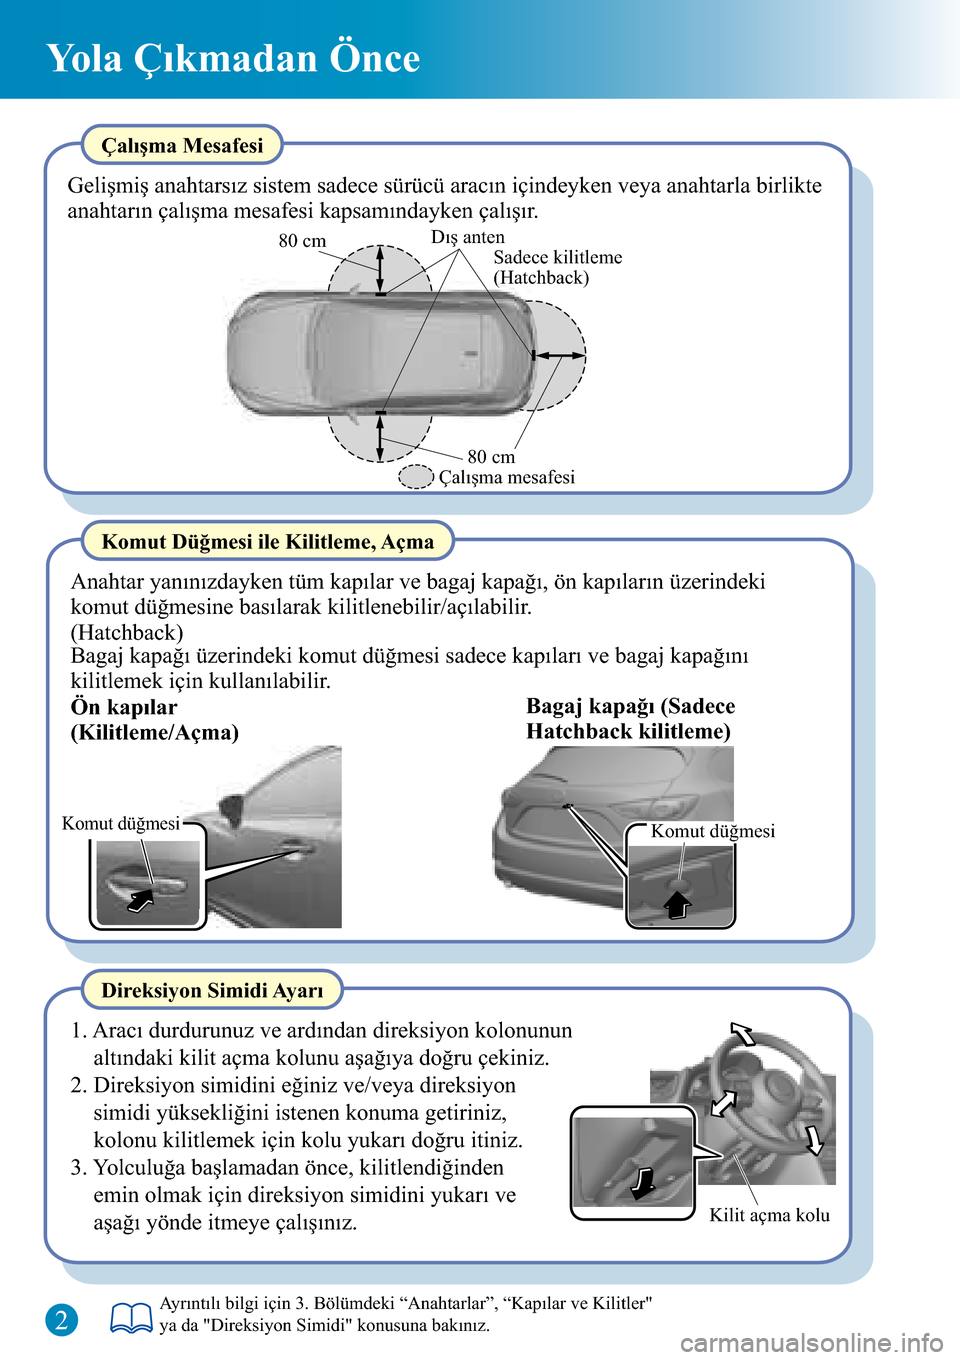 MAZDA MODEL 3 HATCHBACK 2016  Hızlı Kılavuz (in Turkish) Komut düğmesi
Dış anten
Sadece kilitleme 
(Hatchback)
Çalışma mesafesi80 cm 80 cm
Komut düğmesi
Kilit açma kolu
Yola Çıkmadan Önce
Çalışma Mesafesi
Gelişmiş anahtarsız sistem sadece